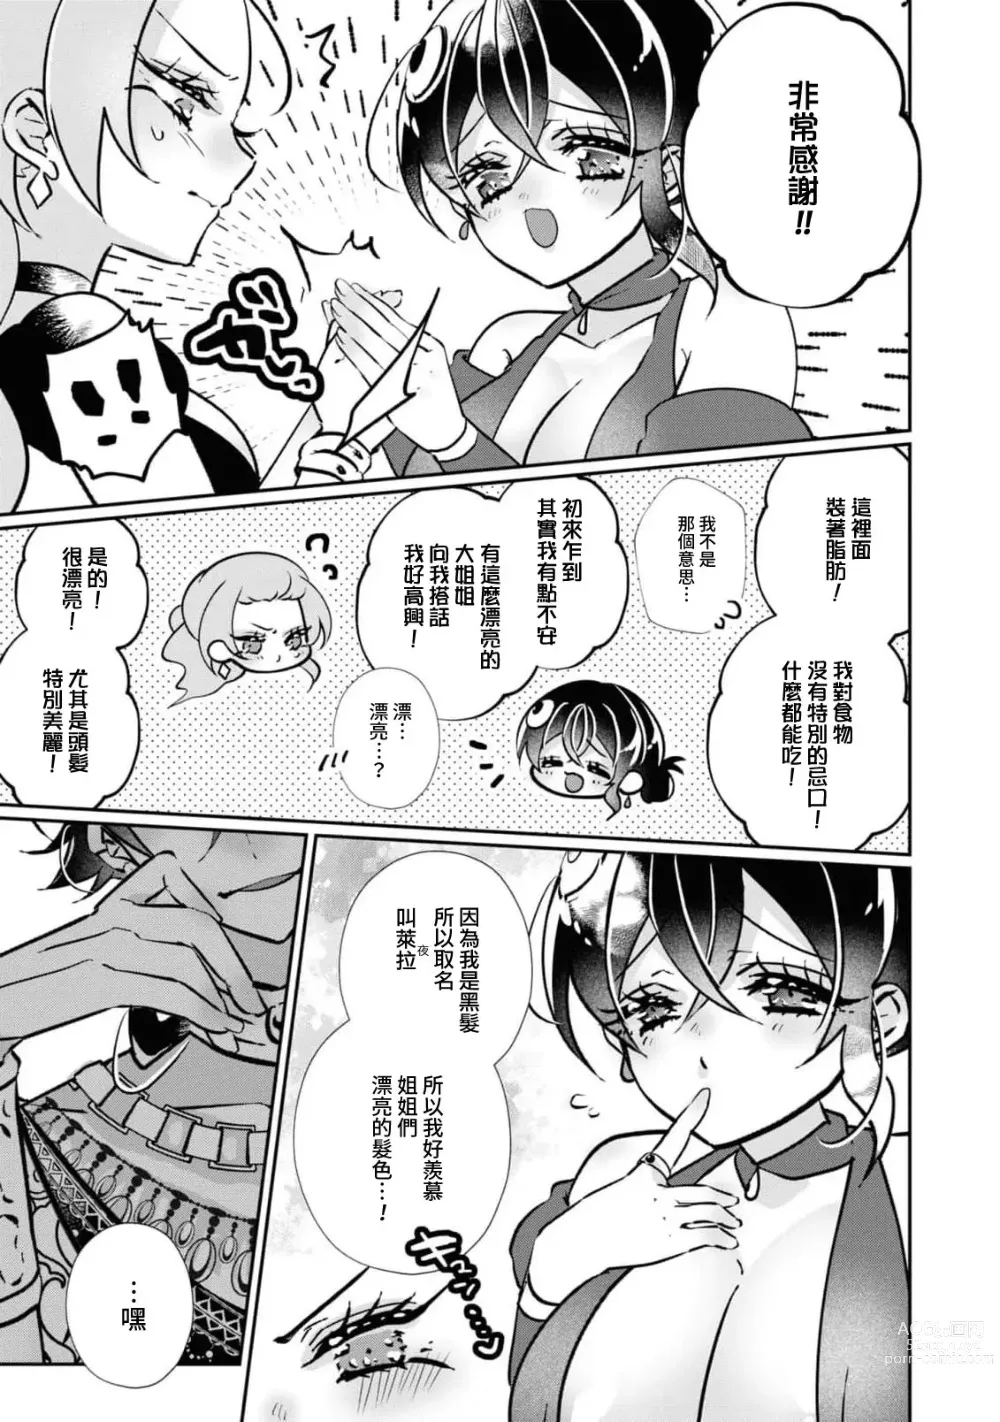 Page 9 of manga 二人的黎明~身為刺客卻反而被目標 融化在甜蜜的夜晚裡~